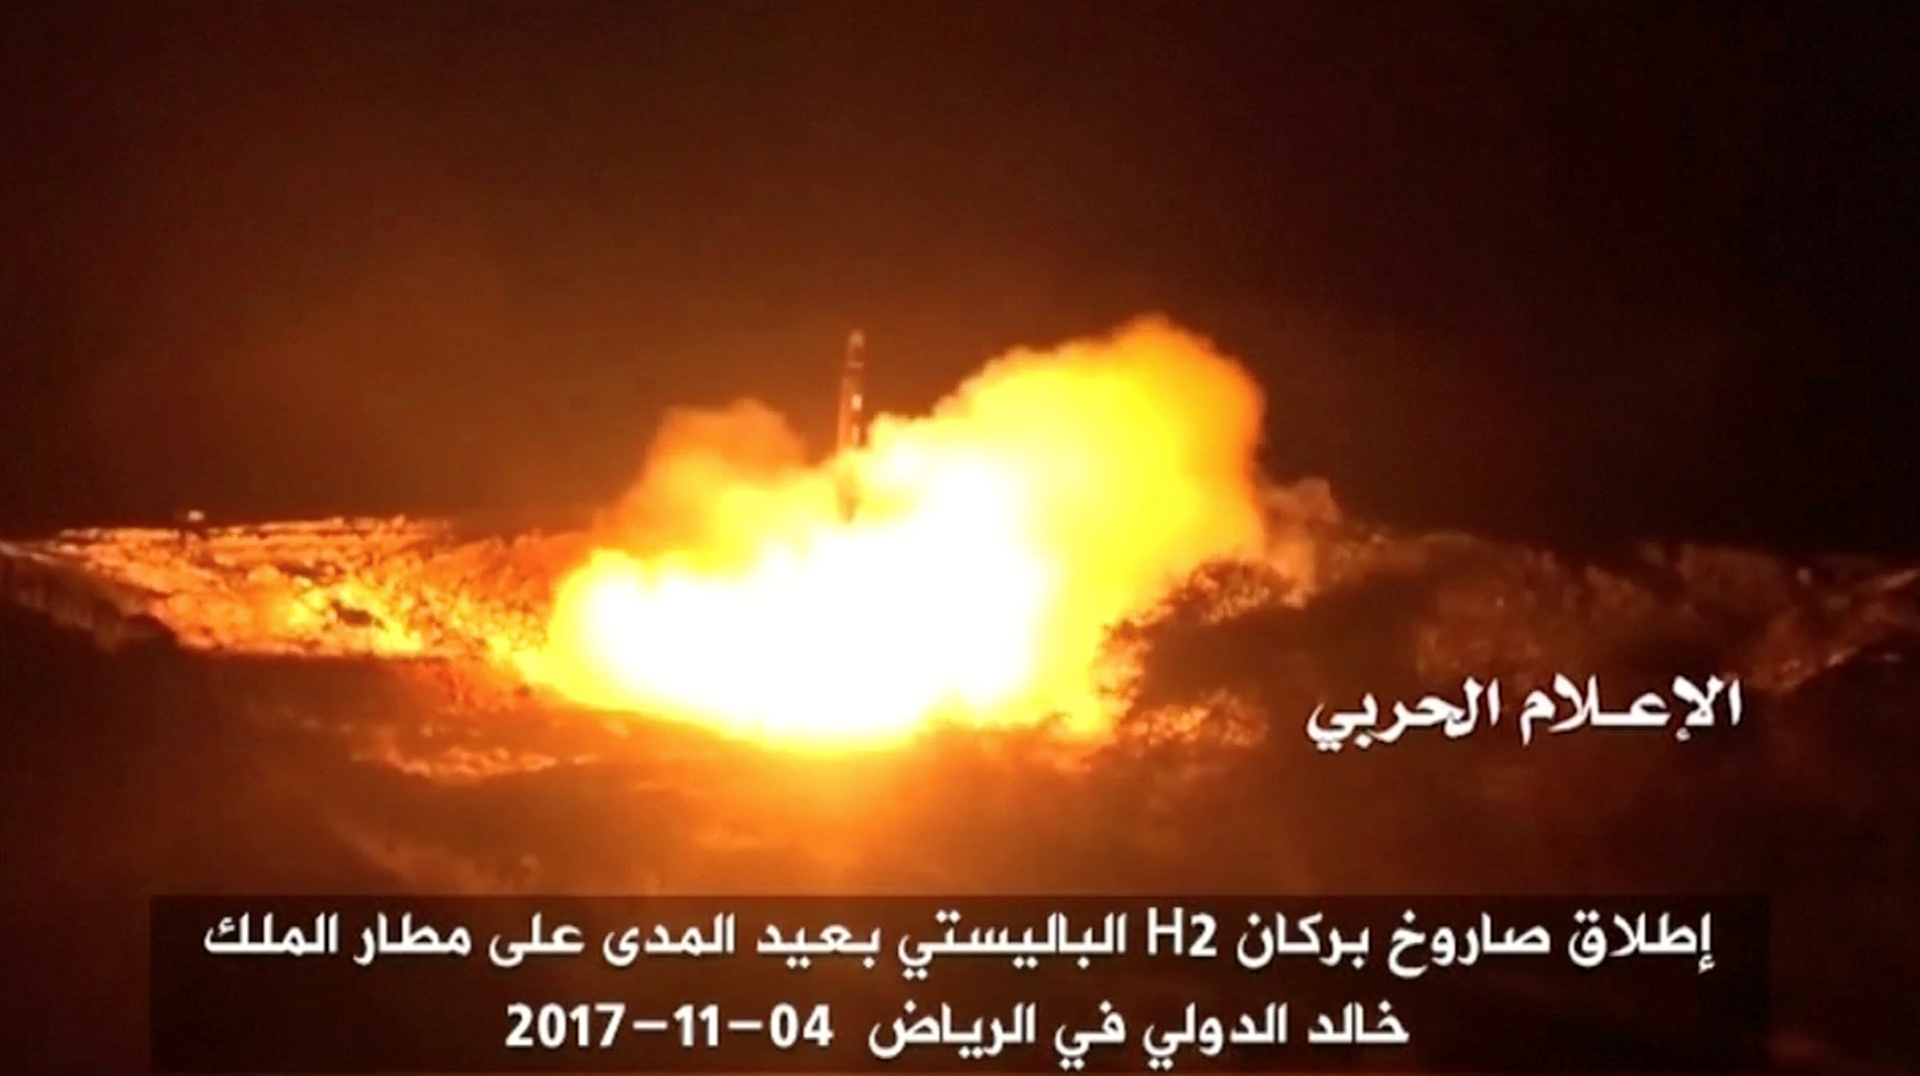 مصر تدين هجمات الحوثيين على السعودية وتؤكد دعمها للمملكة